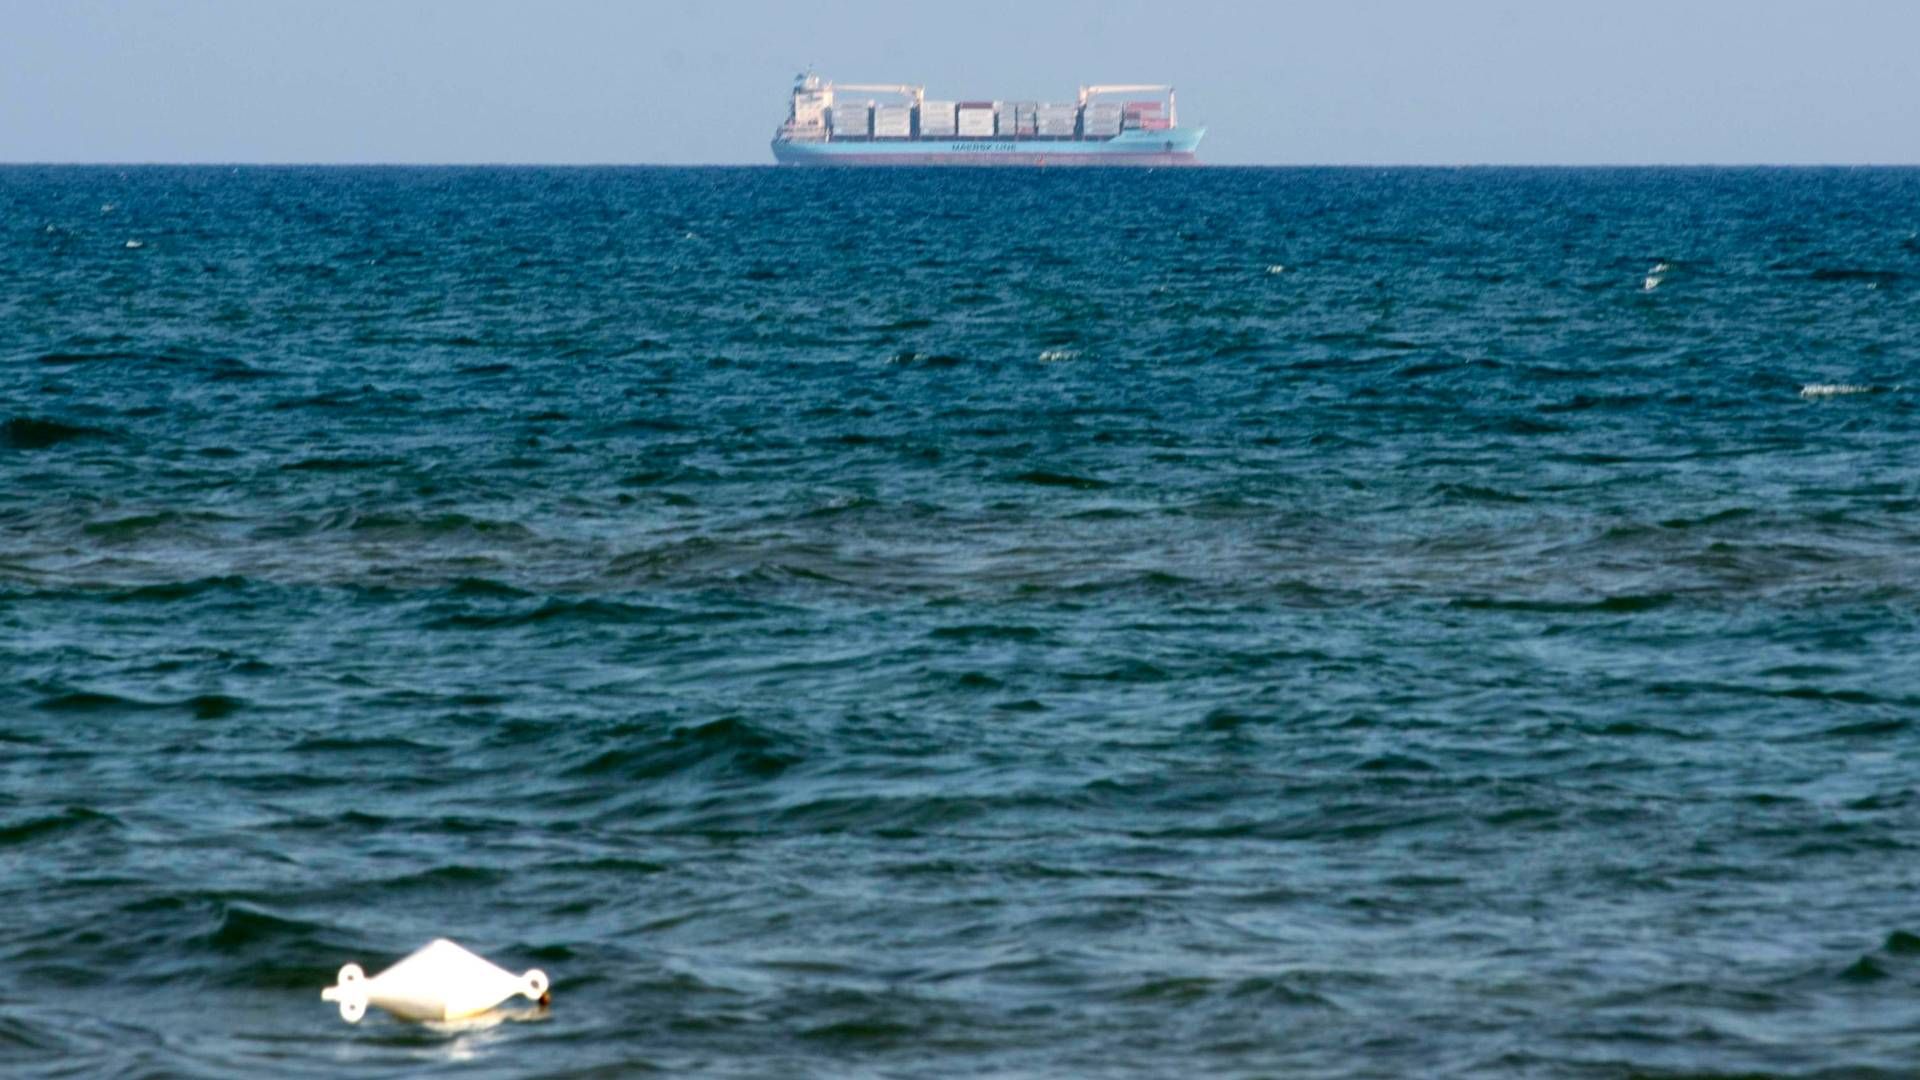 Alexander Maersk ses på horisonten, mens skibet afventer tilladelse til at dokke den sicilianske havn Pozzallo, tæt på Ragusa, i Syditalien, søndag den 24. juni 2018. | Foto: Ritzau Scanpix/ANSA via AP/Santino Galazzo